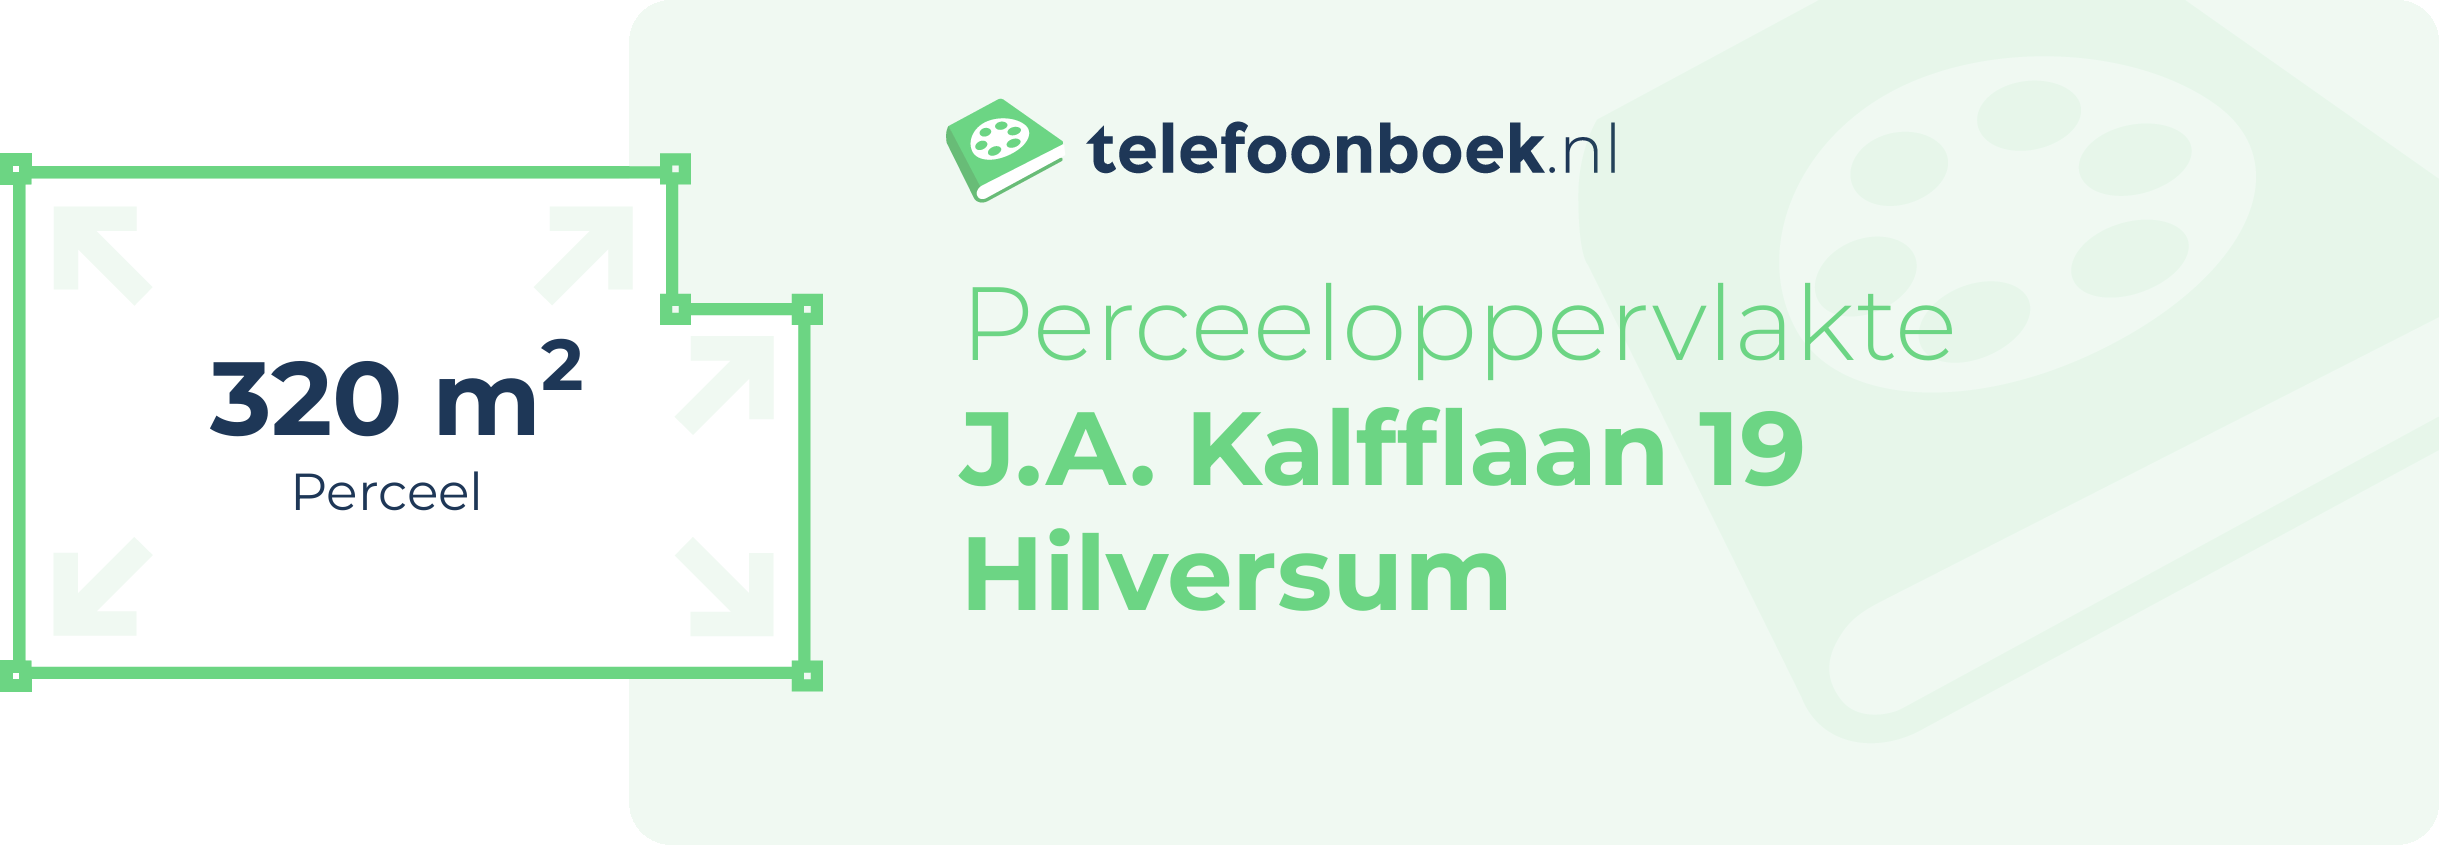 Perceeloppervlakte J.A. Kalfflaan 19 Hilversum